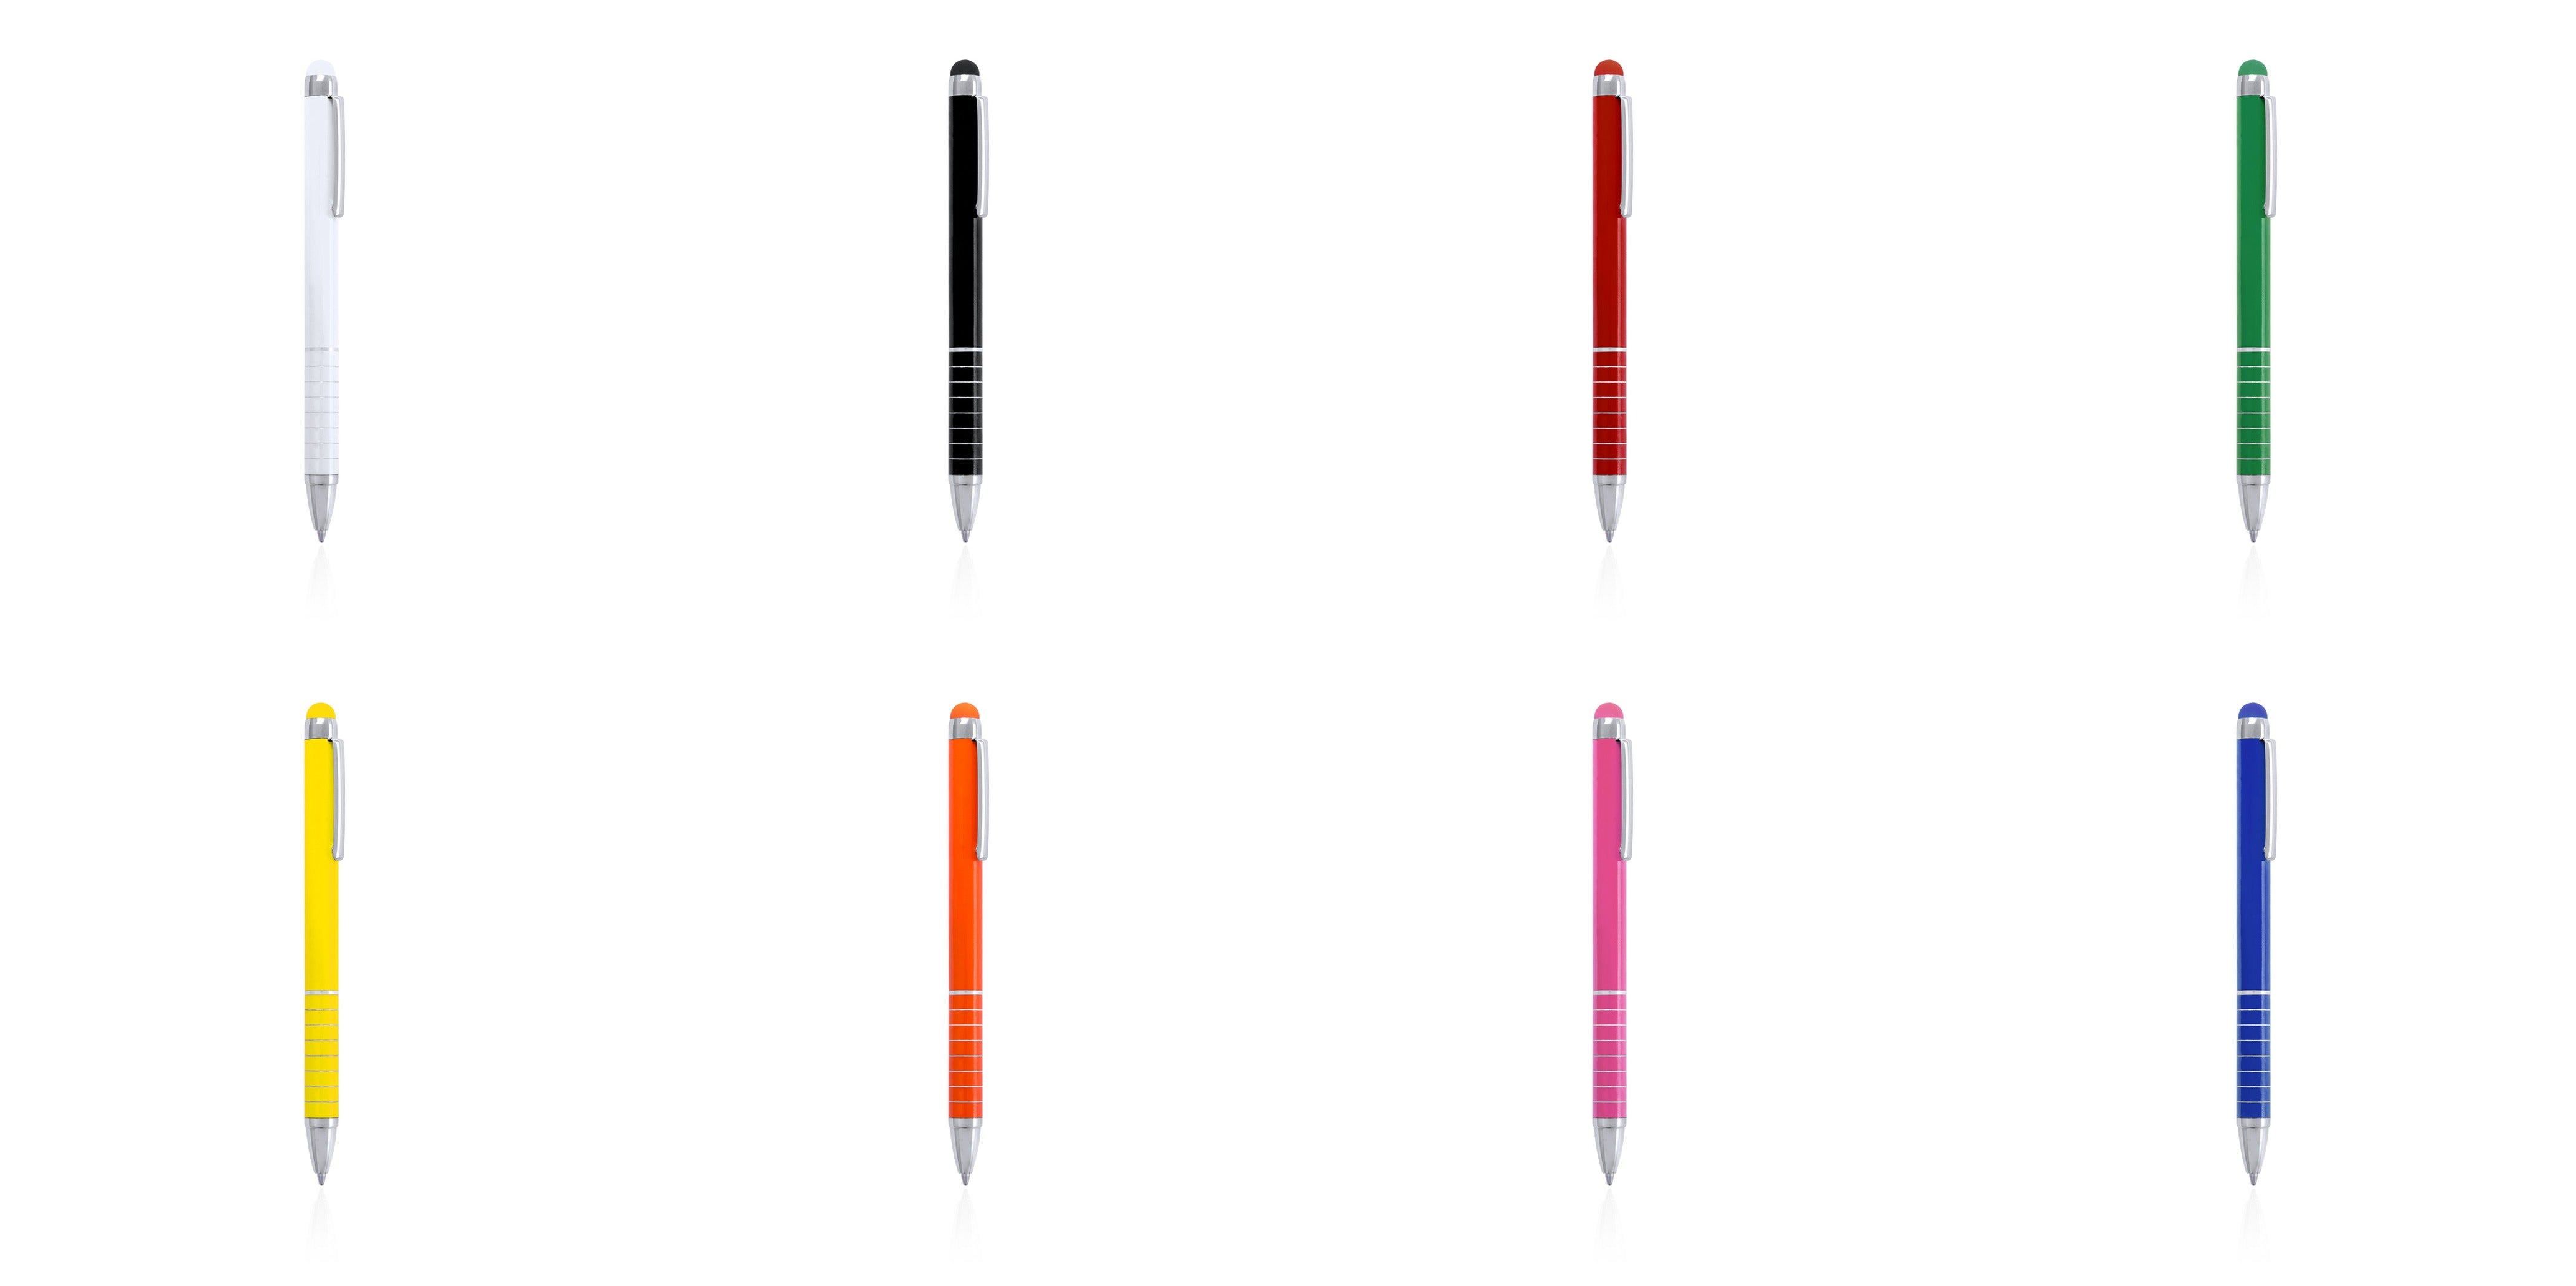 stylo nilf avec Corps uni disponible en diverses couleurs métalliques vives, attirant l'attention.